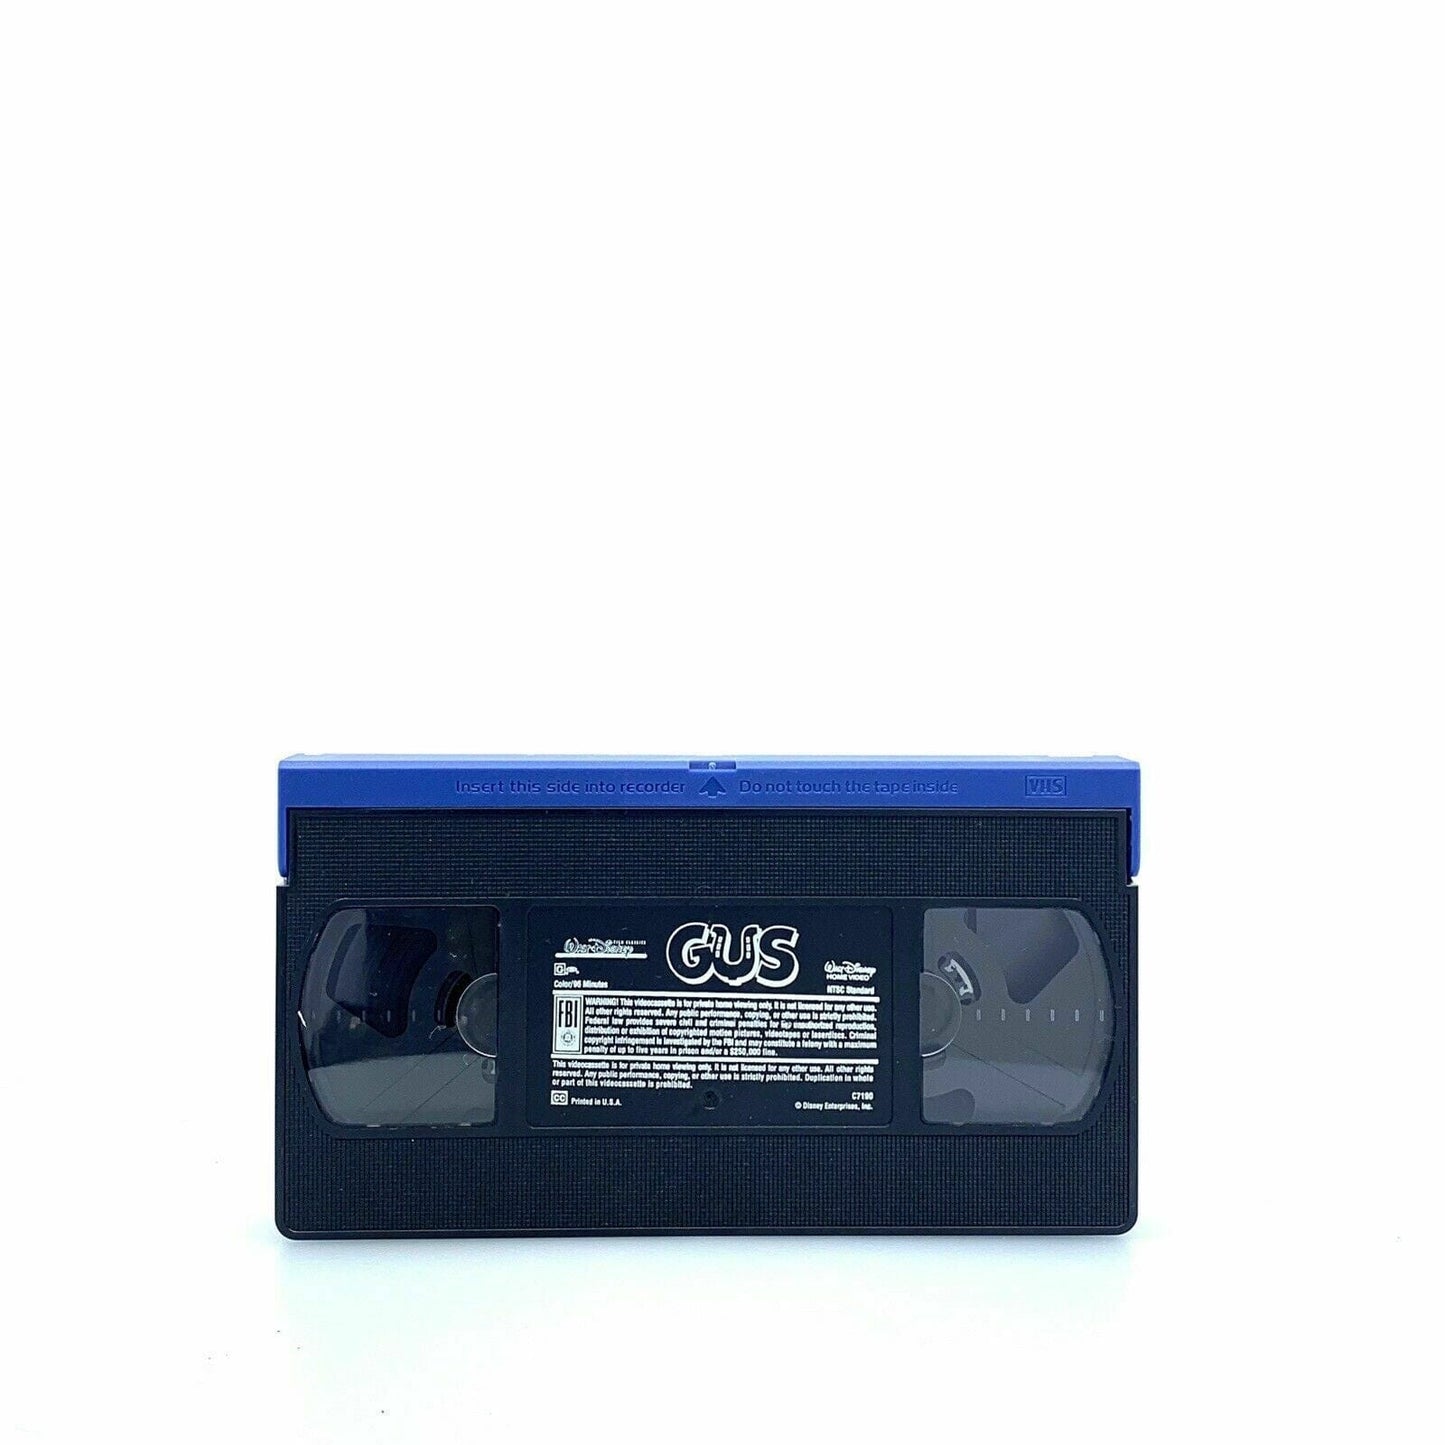 Vintage VHS Cassette Tape: Walt Disney Classic “Gus” Don Knotts